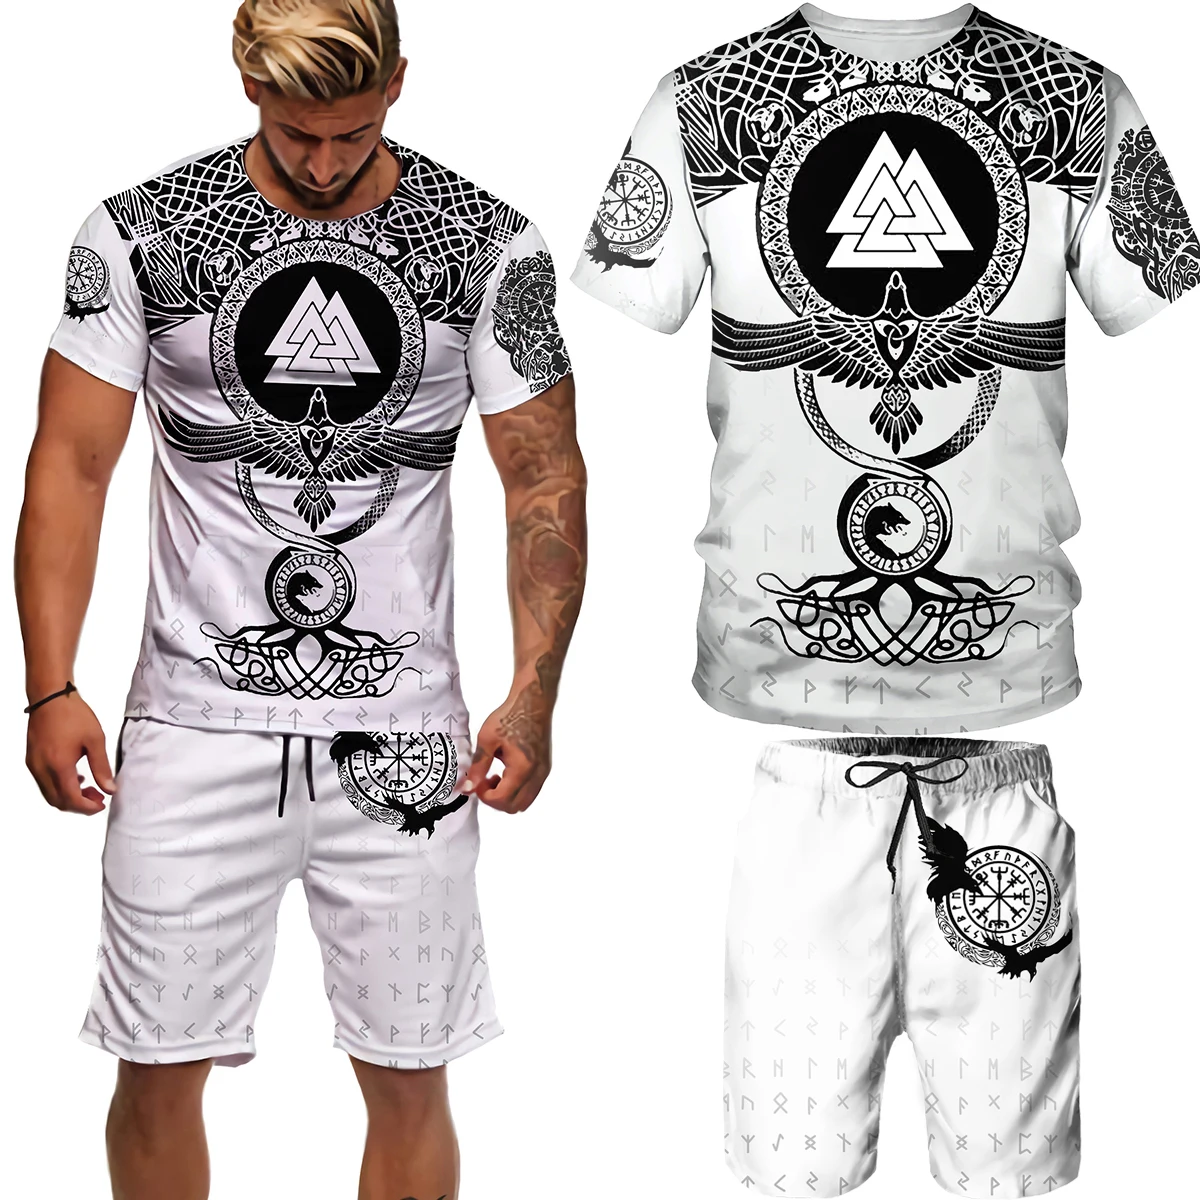 Yaz Viking Odin 3D baskılı T Shirt erkekler spor erkek eşofman T-shirt şort takımı O boyun kısa kollu erkek giyim takım